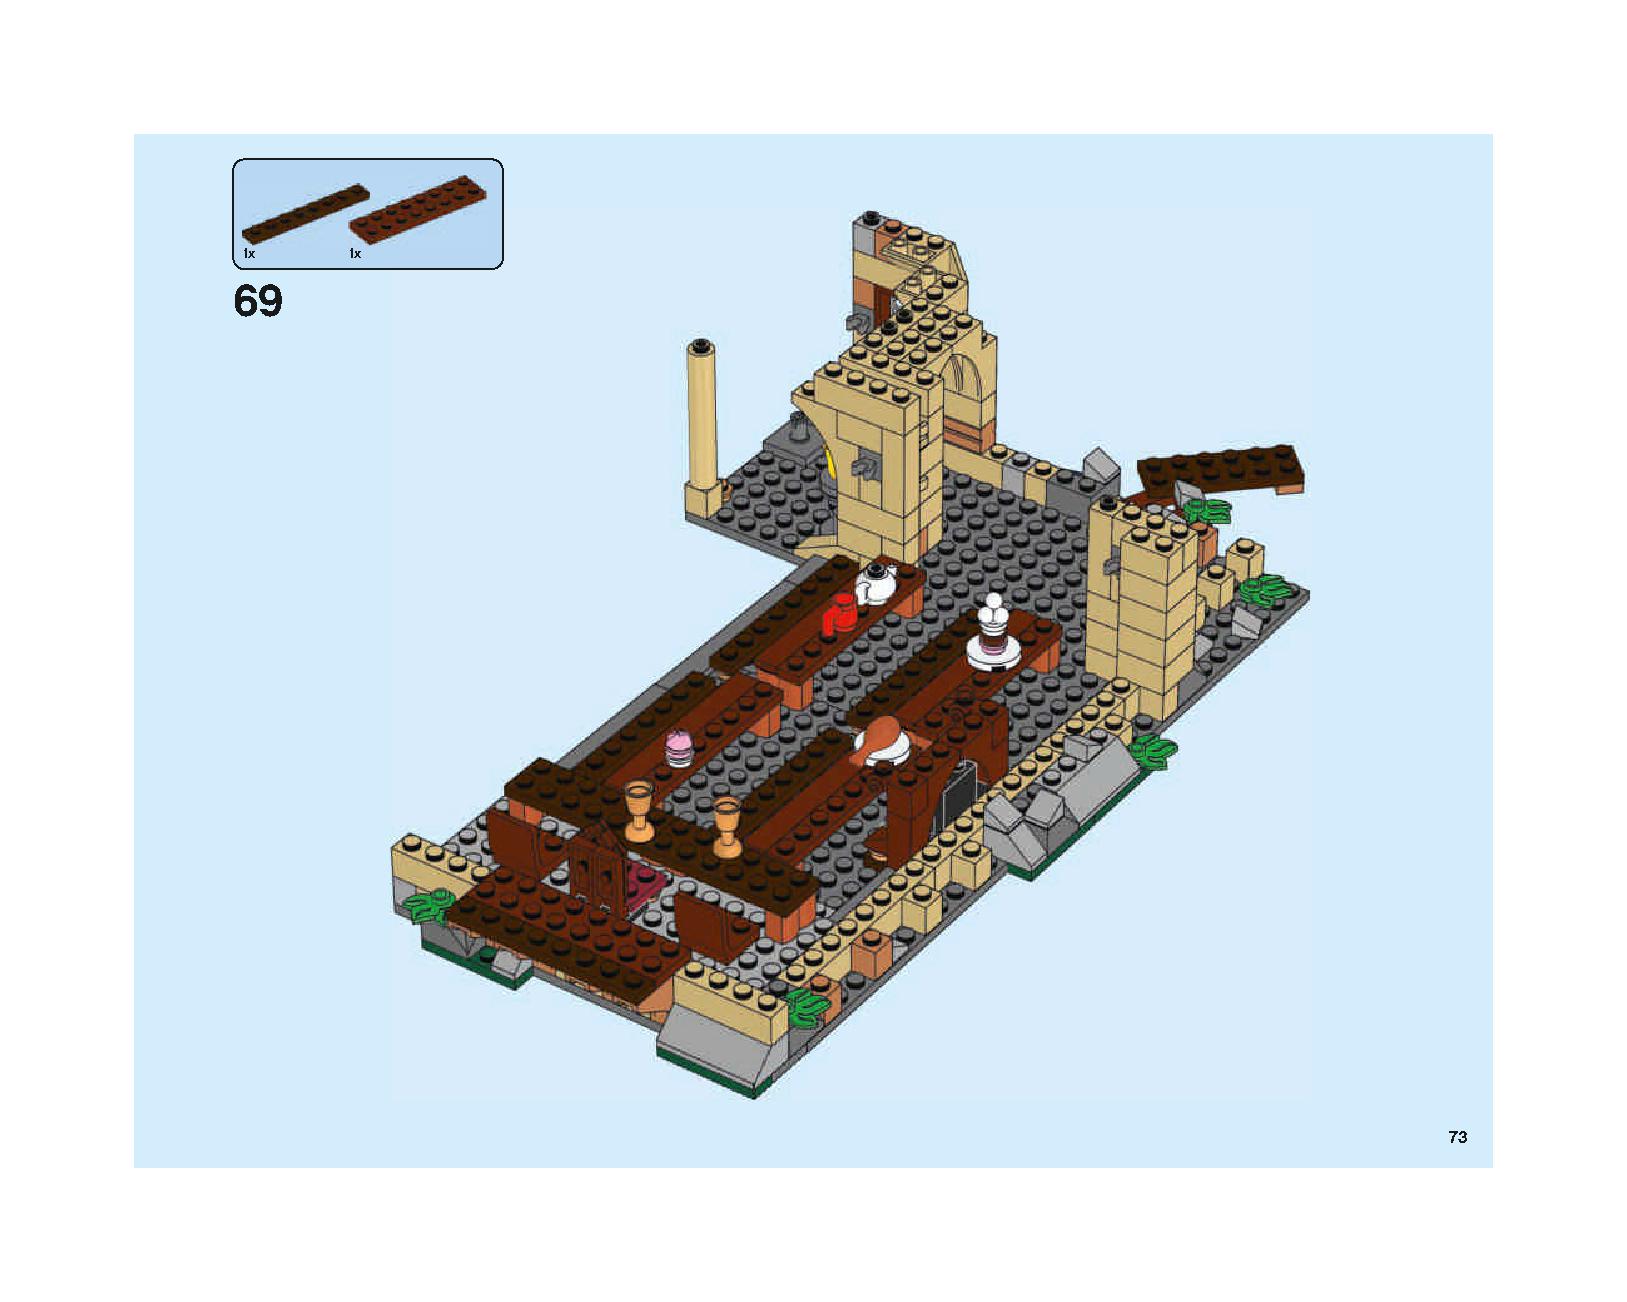 ホグワーツの大広間 75954 レゴの商品情報 レゴの説明書・組立方法 73 page